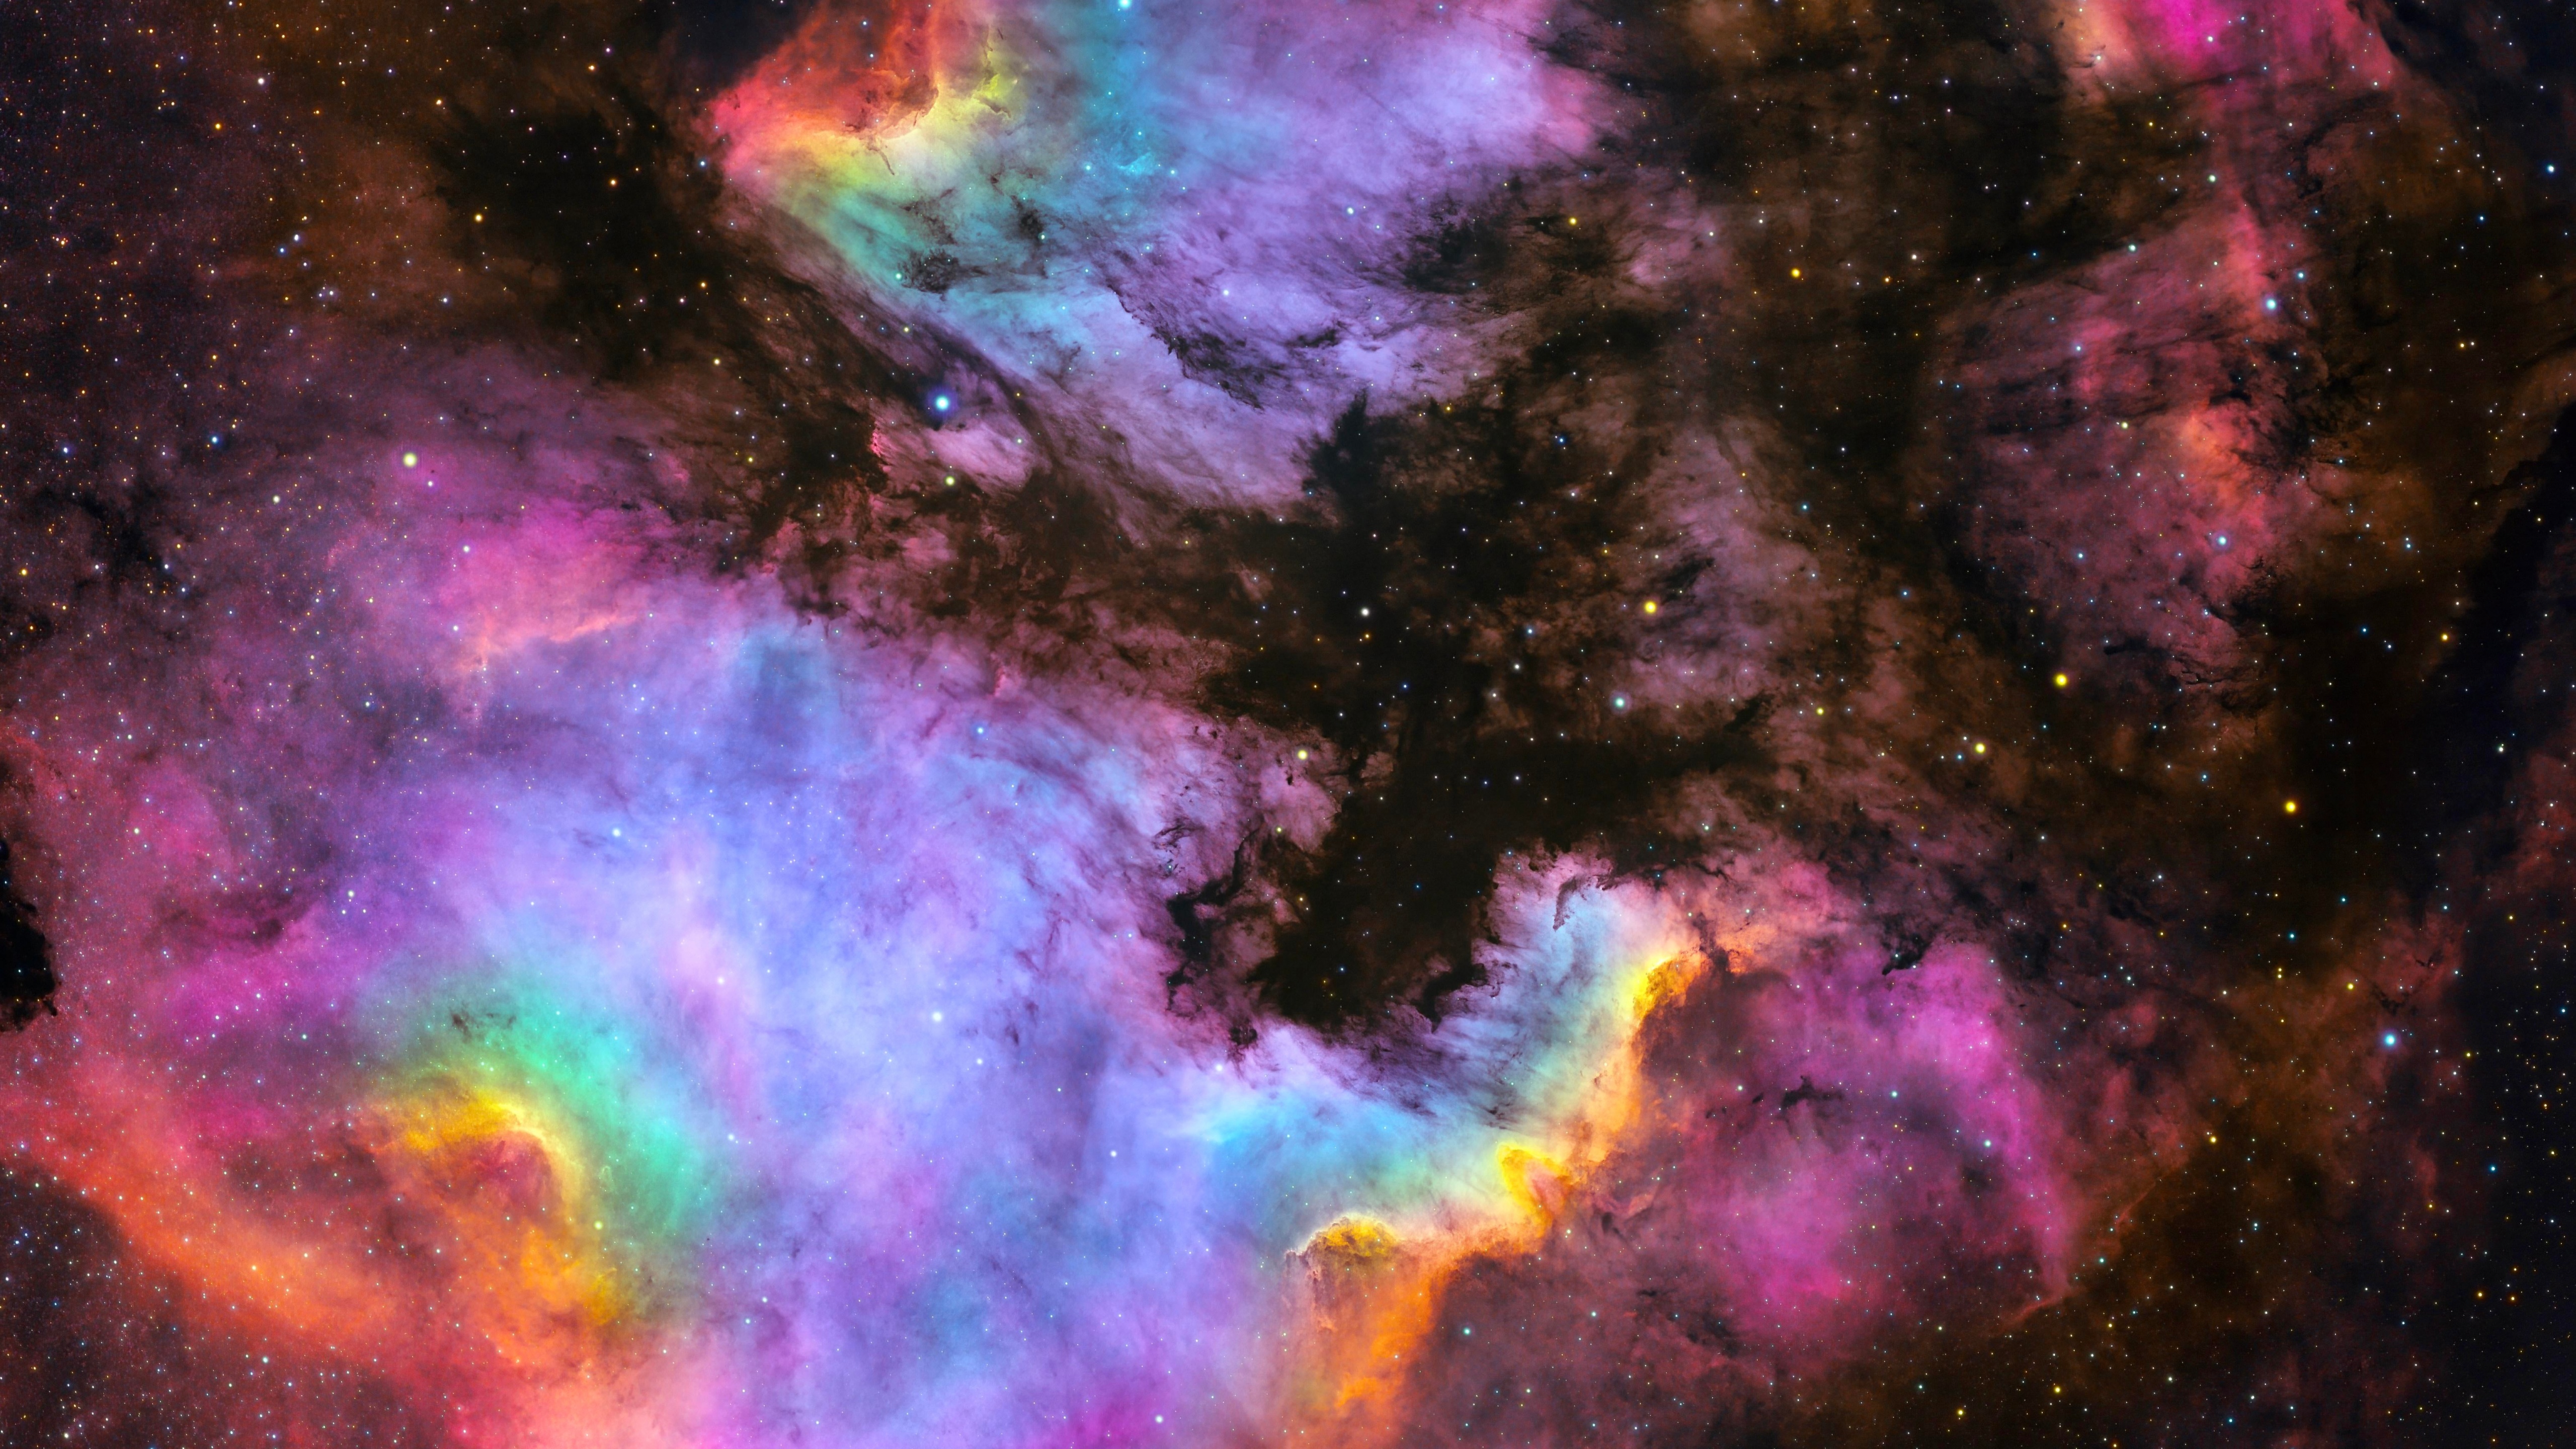 Vũ trụ đầy bí ẩn với những vệ tinh lấp lánh đầy màu sắc, sự lóa mắt của sao tuyệt đẹp, tất cả được tái hiện tuyệt đẹp trong hình nền Nebula đang chờ đợi bạn. Hãy ngắm nhìn chúng và thưởng thức sự tuyệt vời.